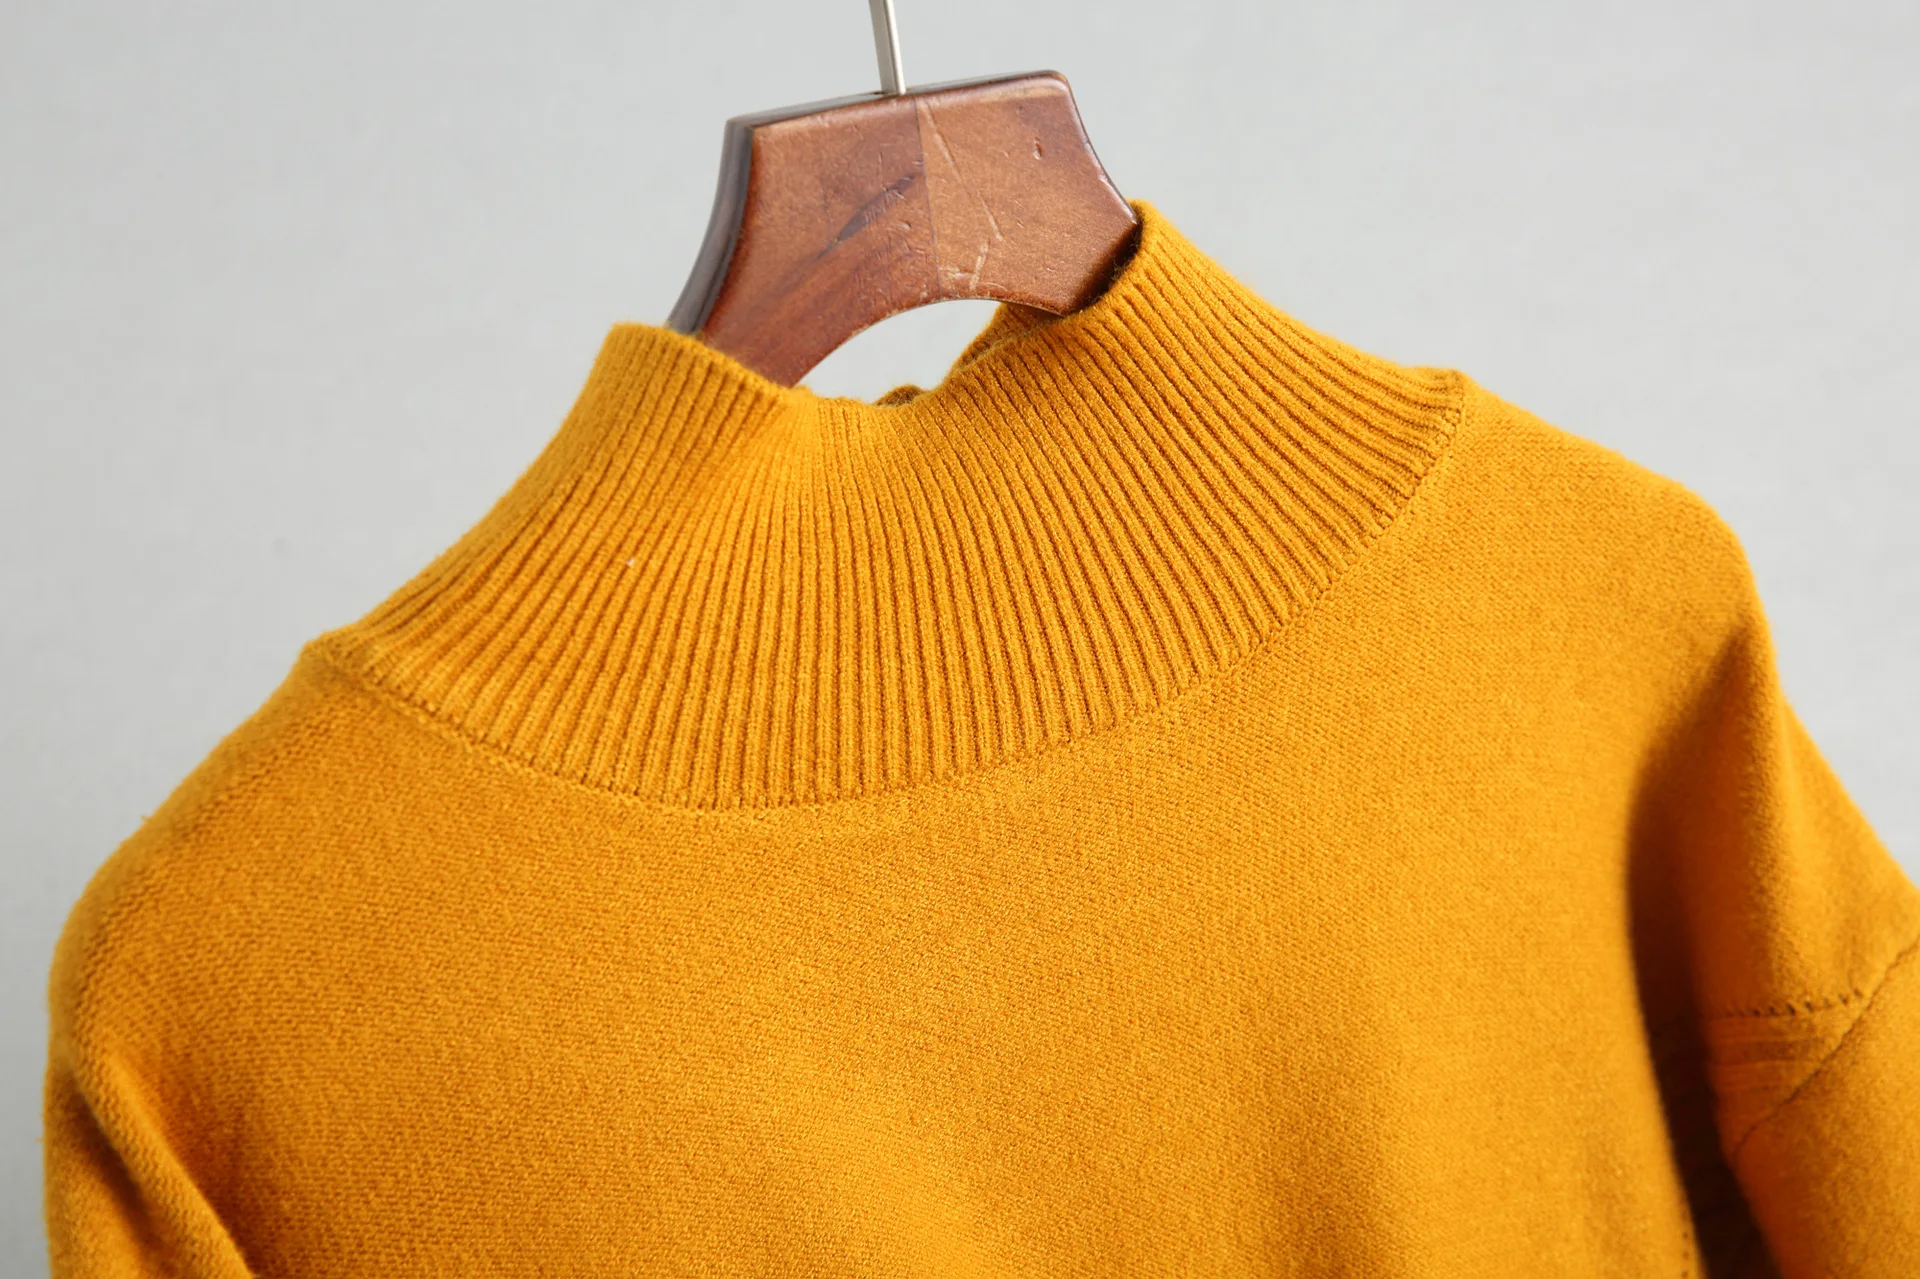 Свободный Карманный вязаный минималистичный вязаный Топ 8-1831 вязаный свитер женские свитера и пуловеры свитер с высоким воротом осень-зима